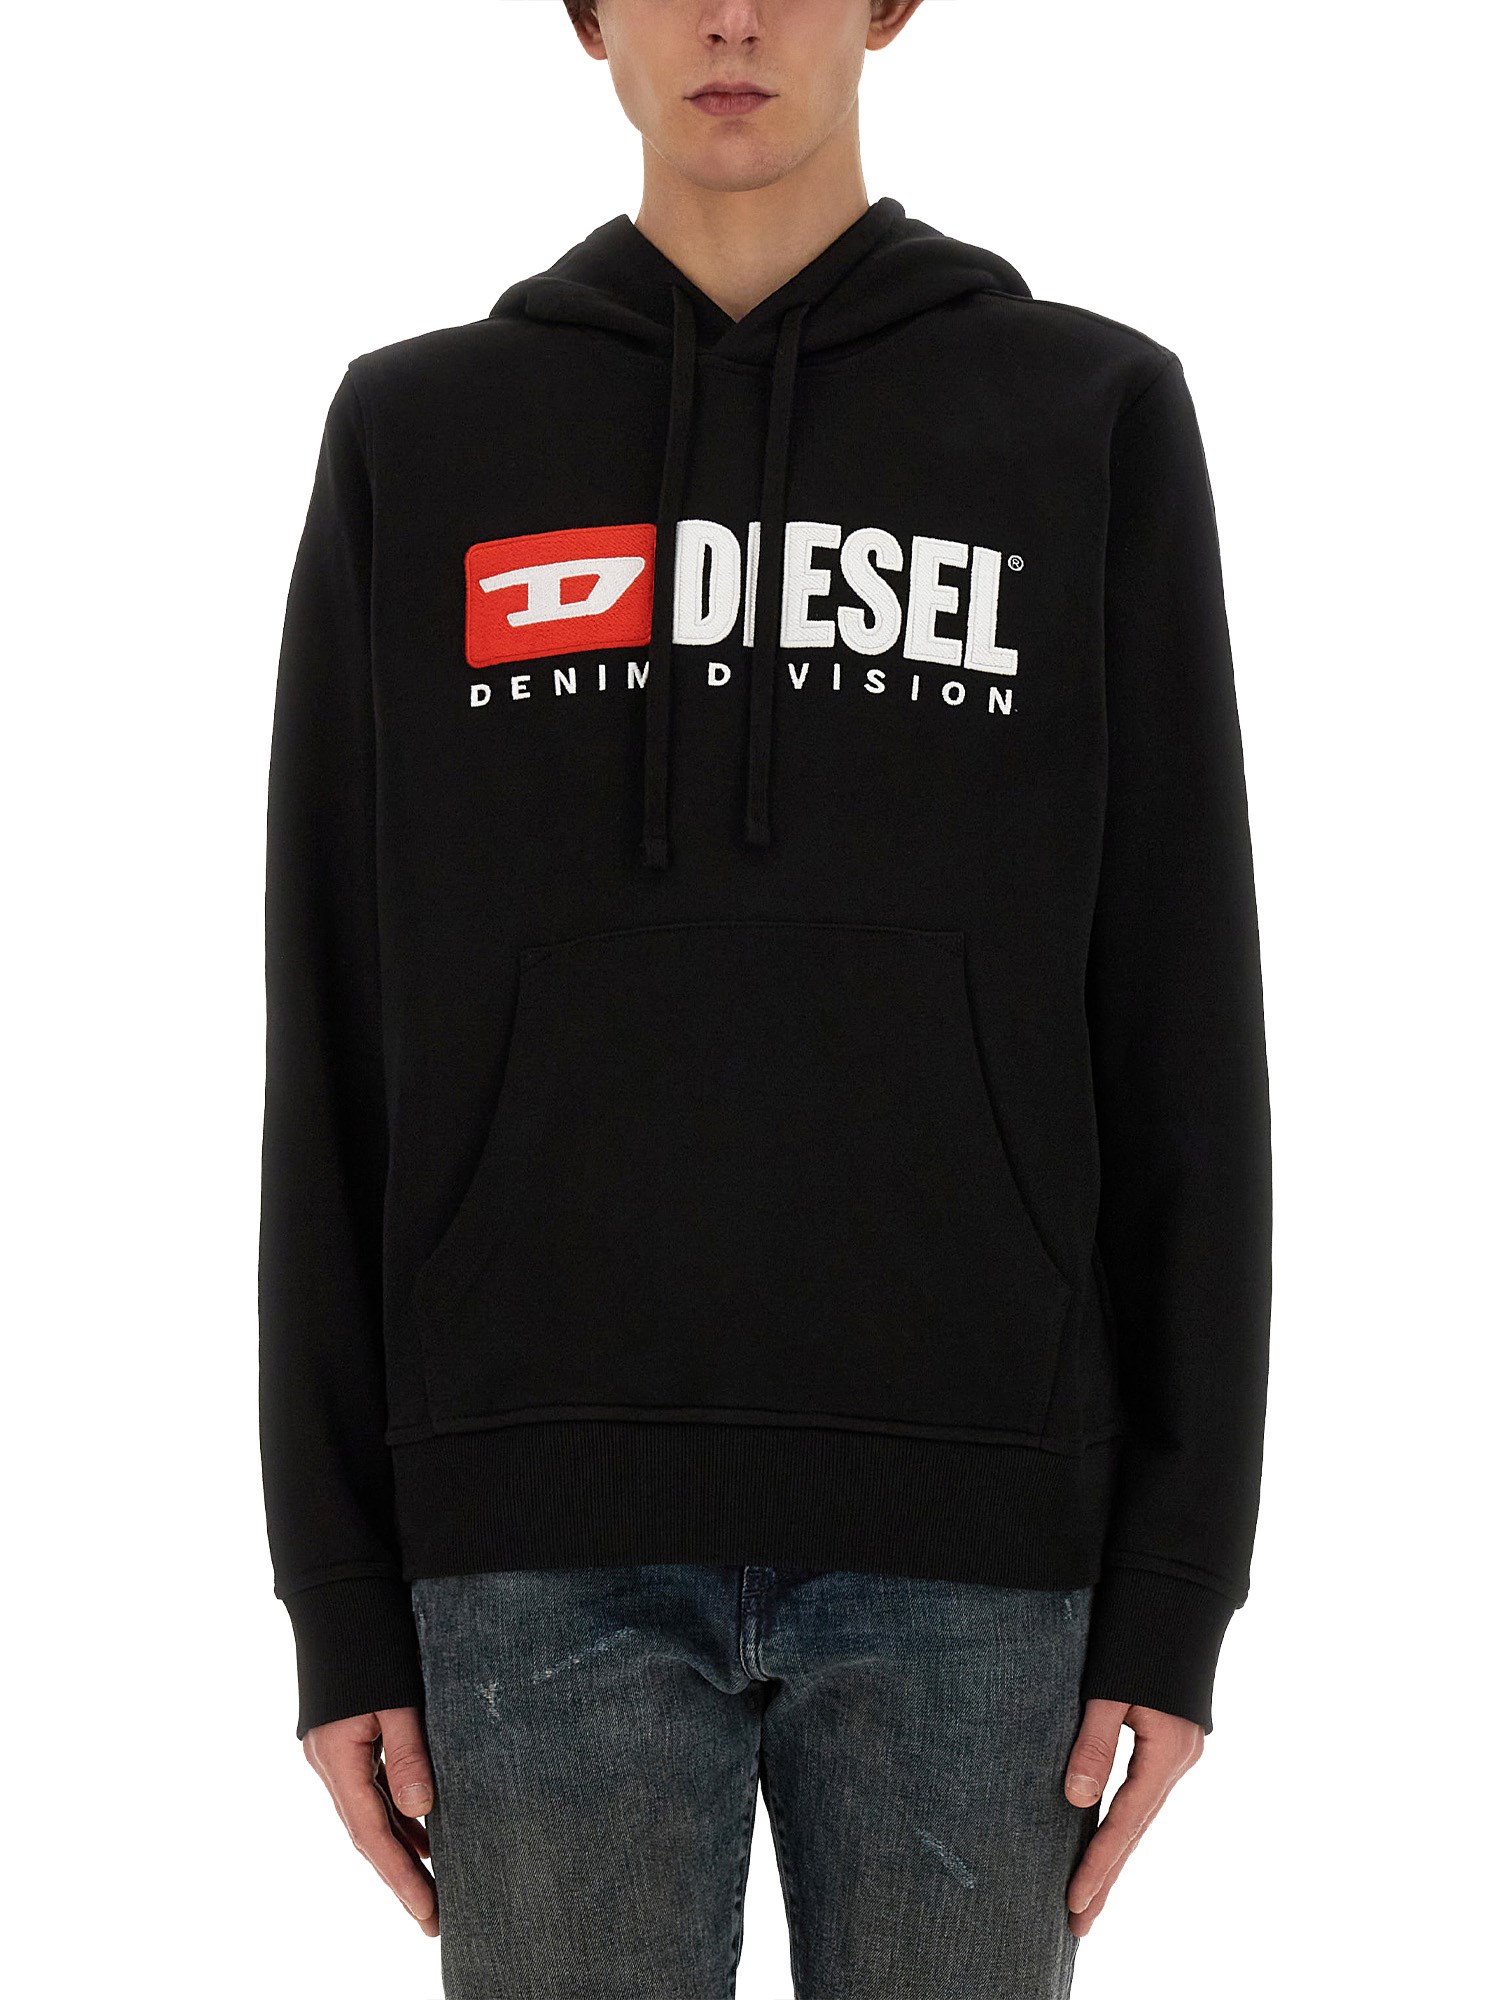 Diesel diesel sweatshirt with logo